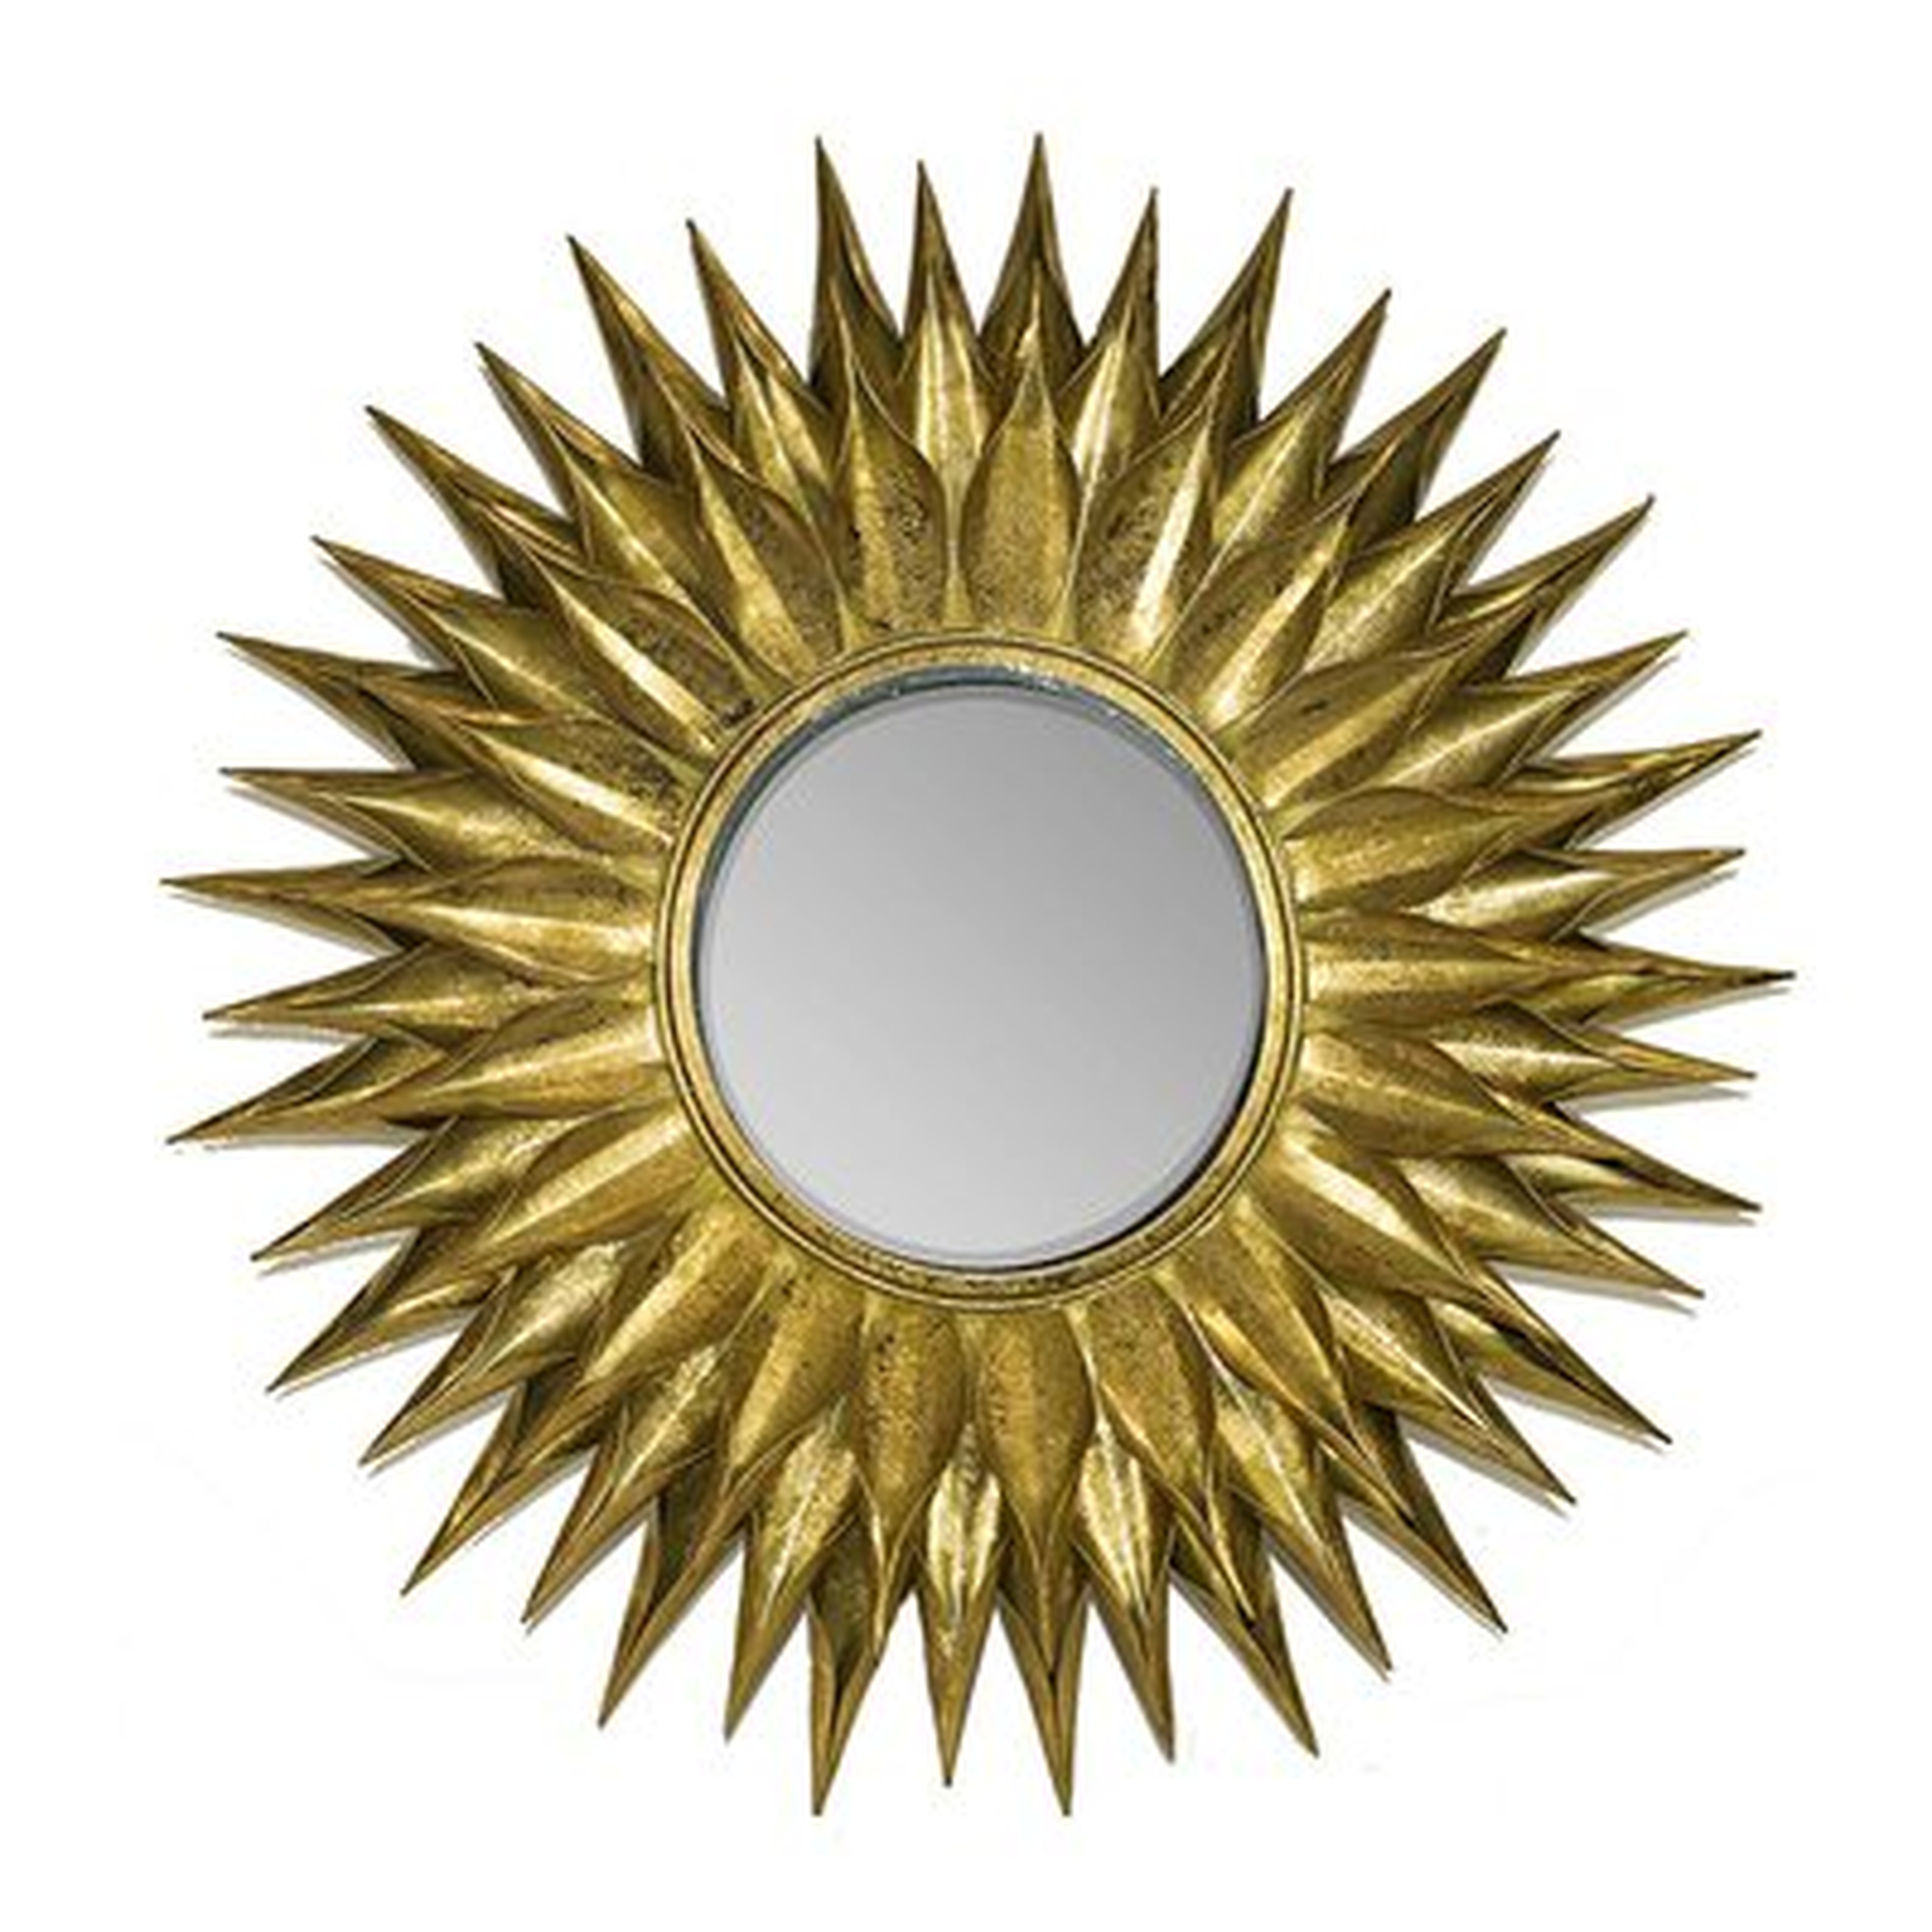 Brosley Round Sunburst Accent Mirror - Wayfair